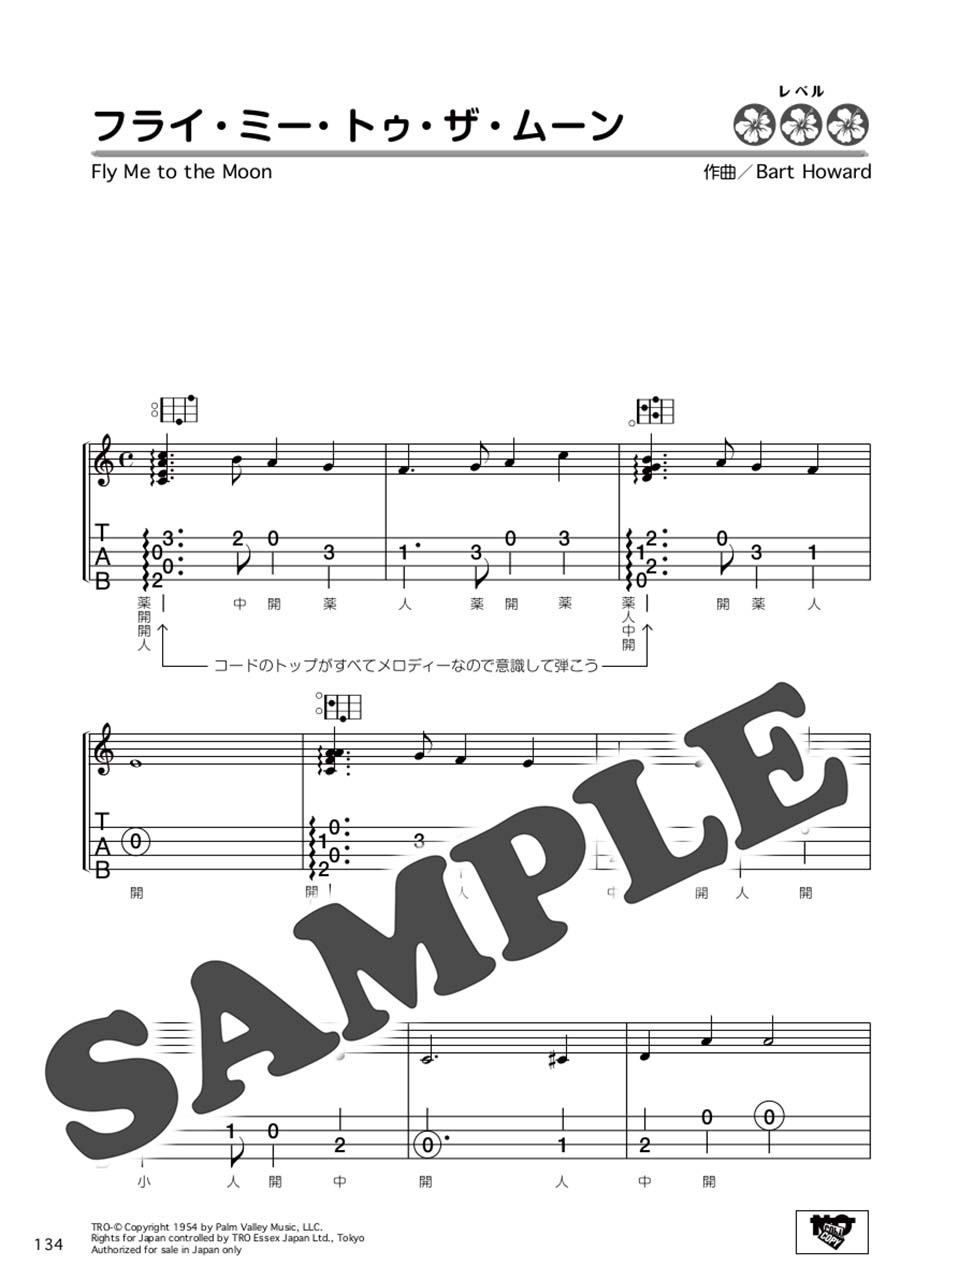 無料 ウクレレ 楽譜 ウクレレの無料楽譜・タブ譜サイトおすすめランキングBEST3